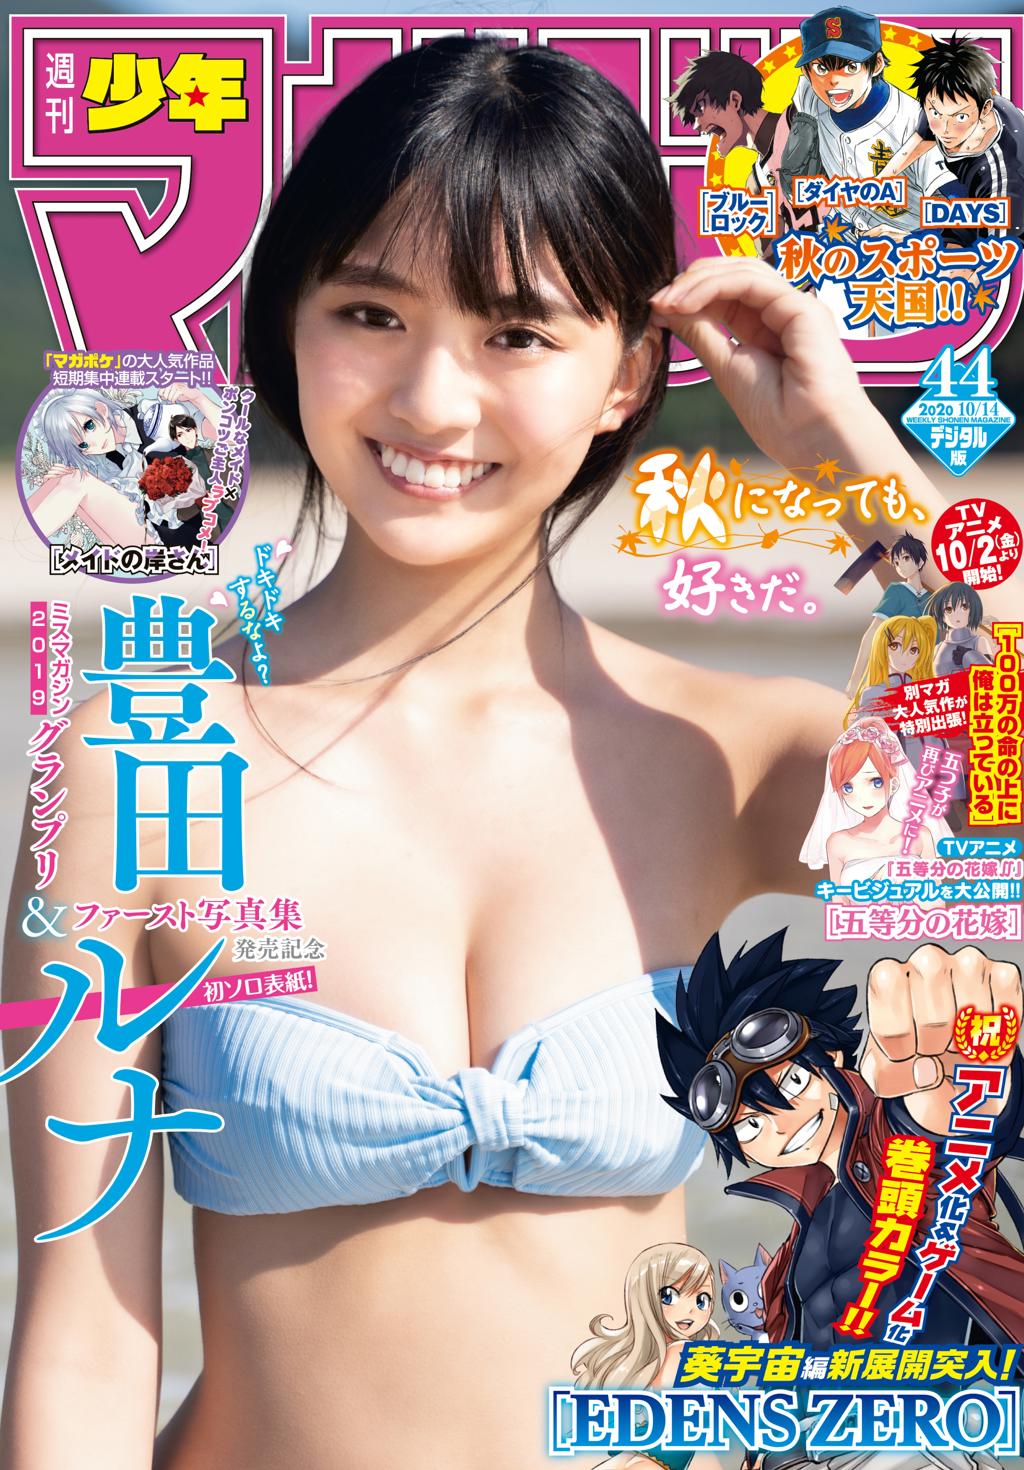 丰田露娜.[Shonen Magazine] 2020 No.44 Runa Toyoda週刊少年マガジン 2020年44号 (豊田ルナ)